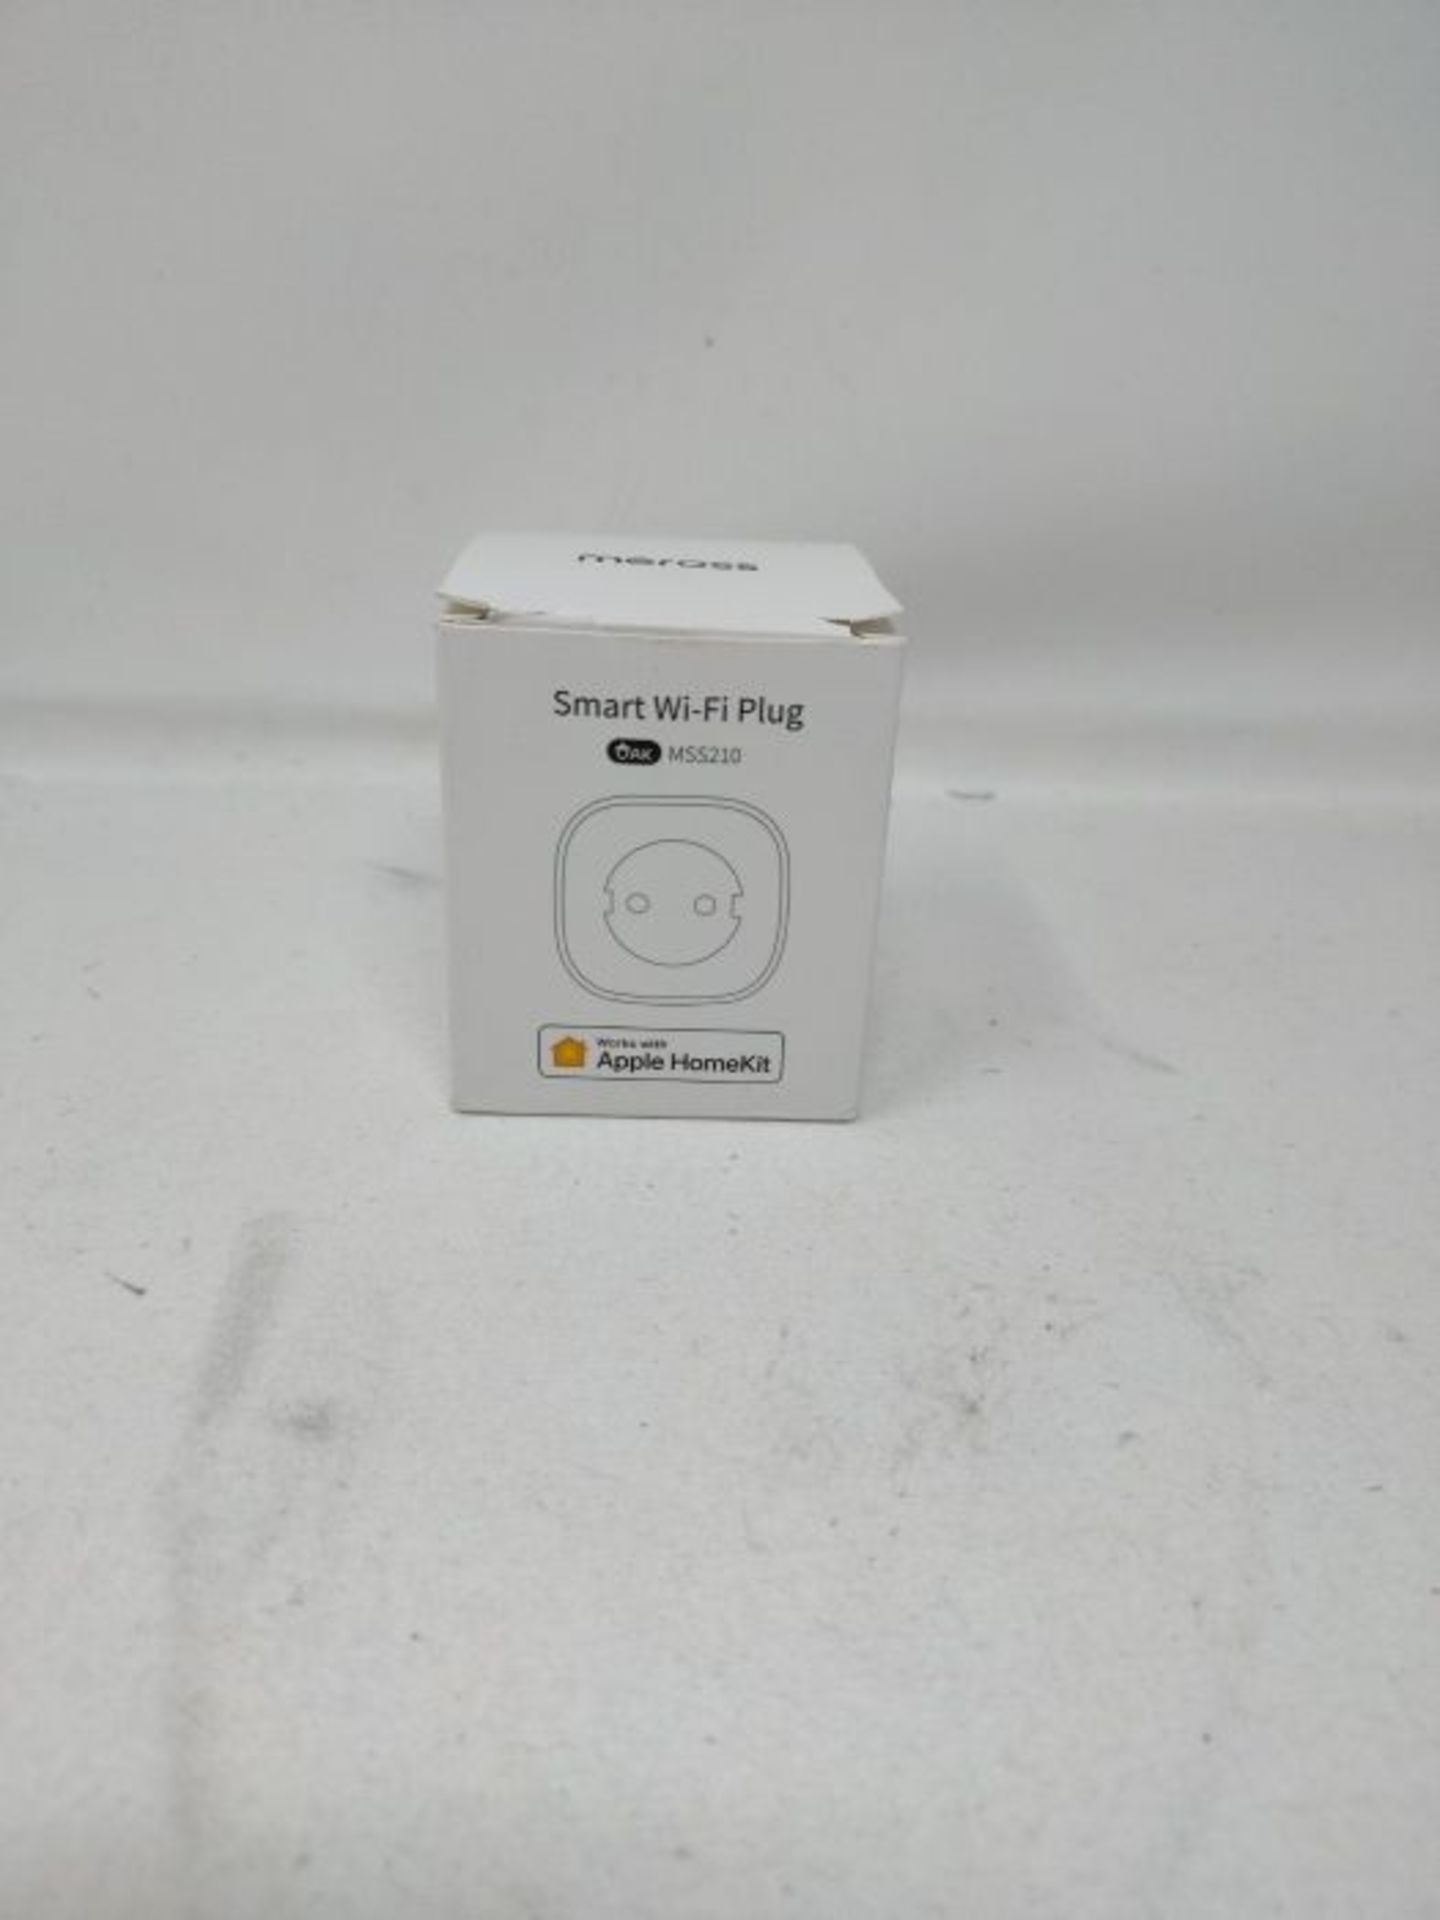 WLAN socket works with Apple HomeKit, meross Smart Plug, compatible with Siri, Alexa, - Image 3 of 4